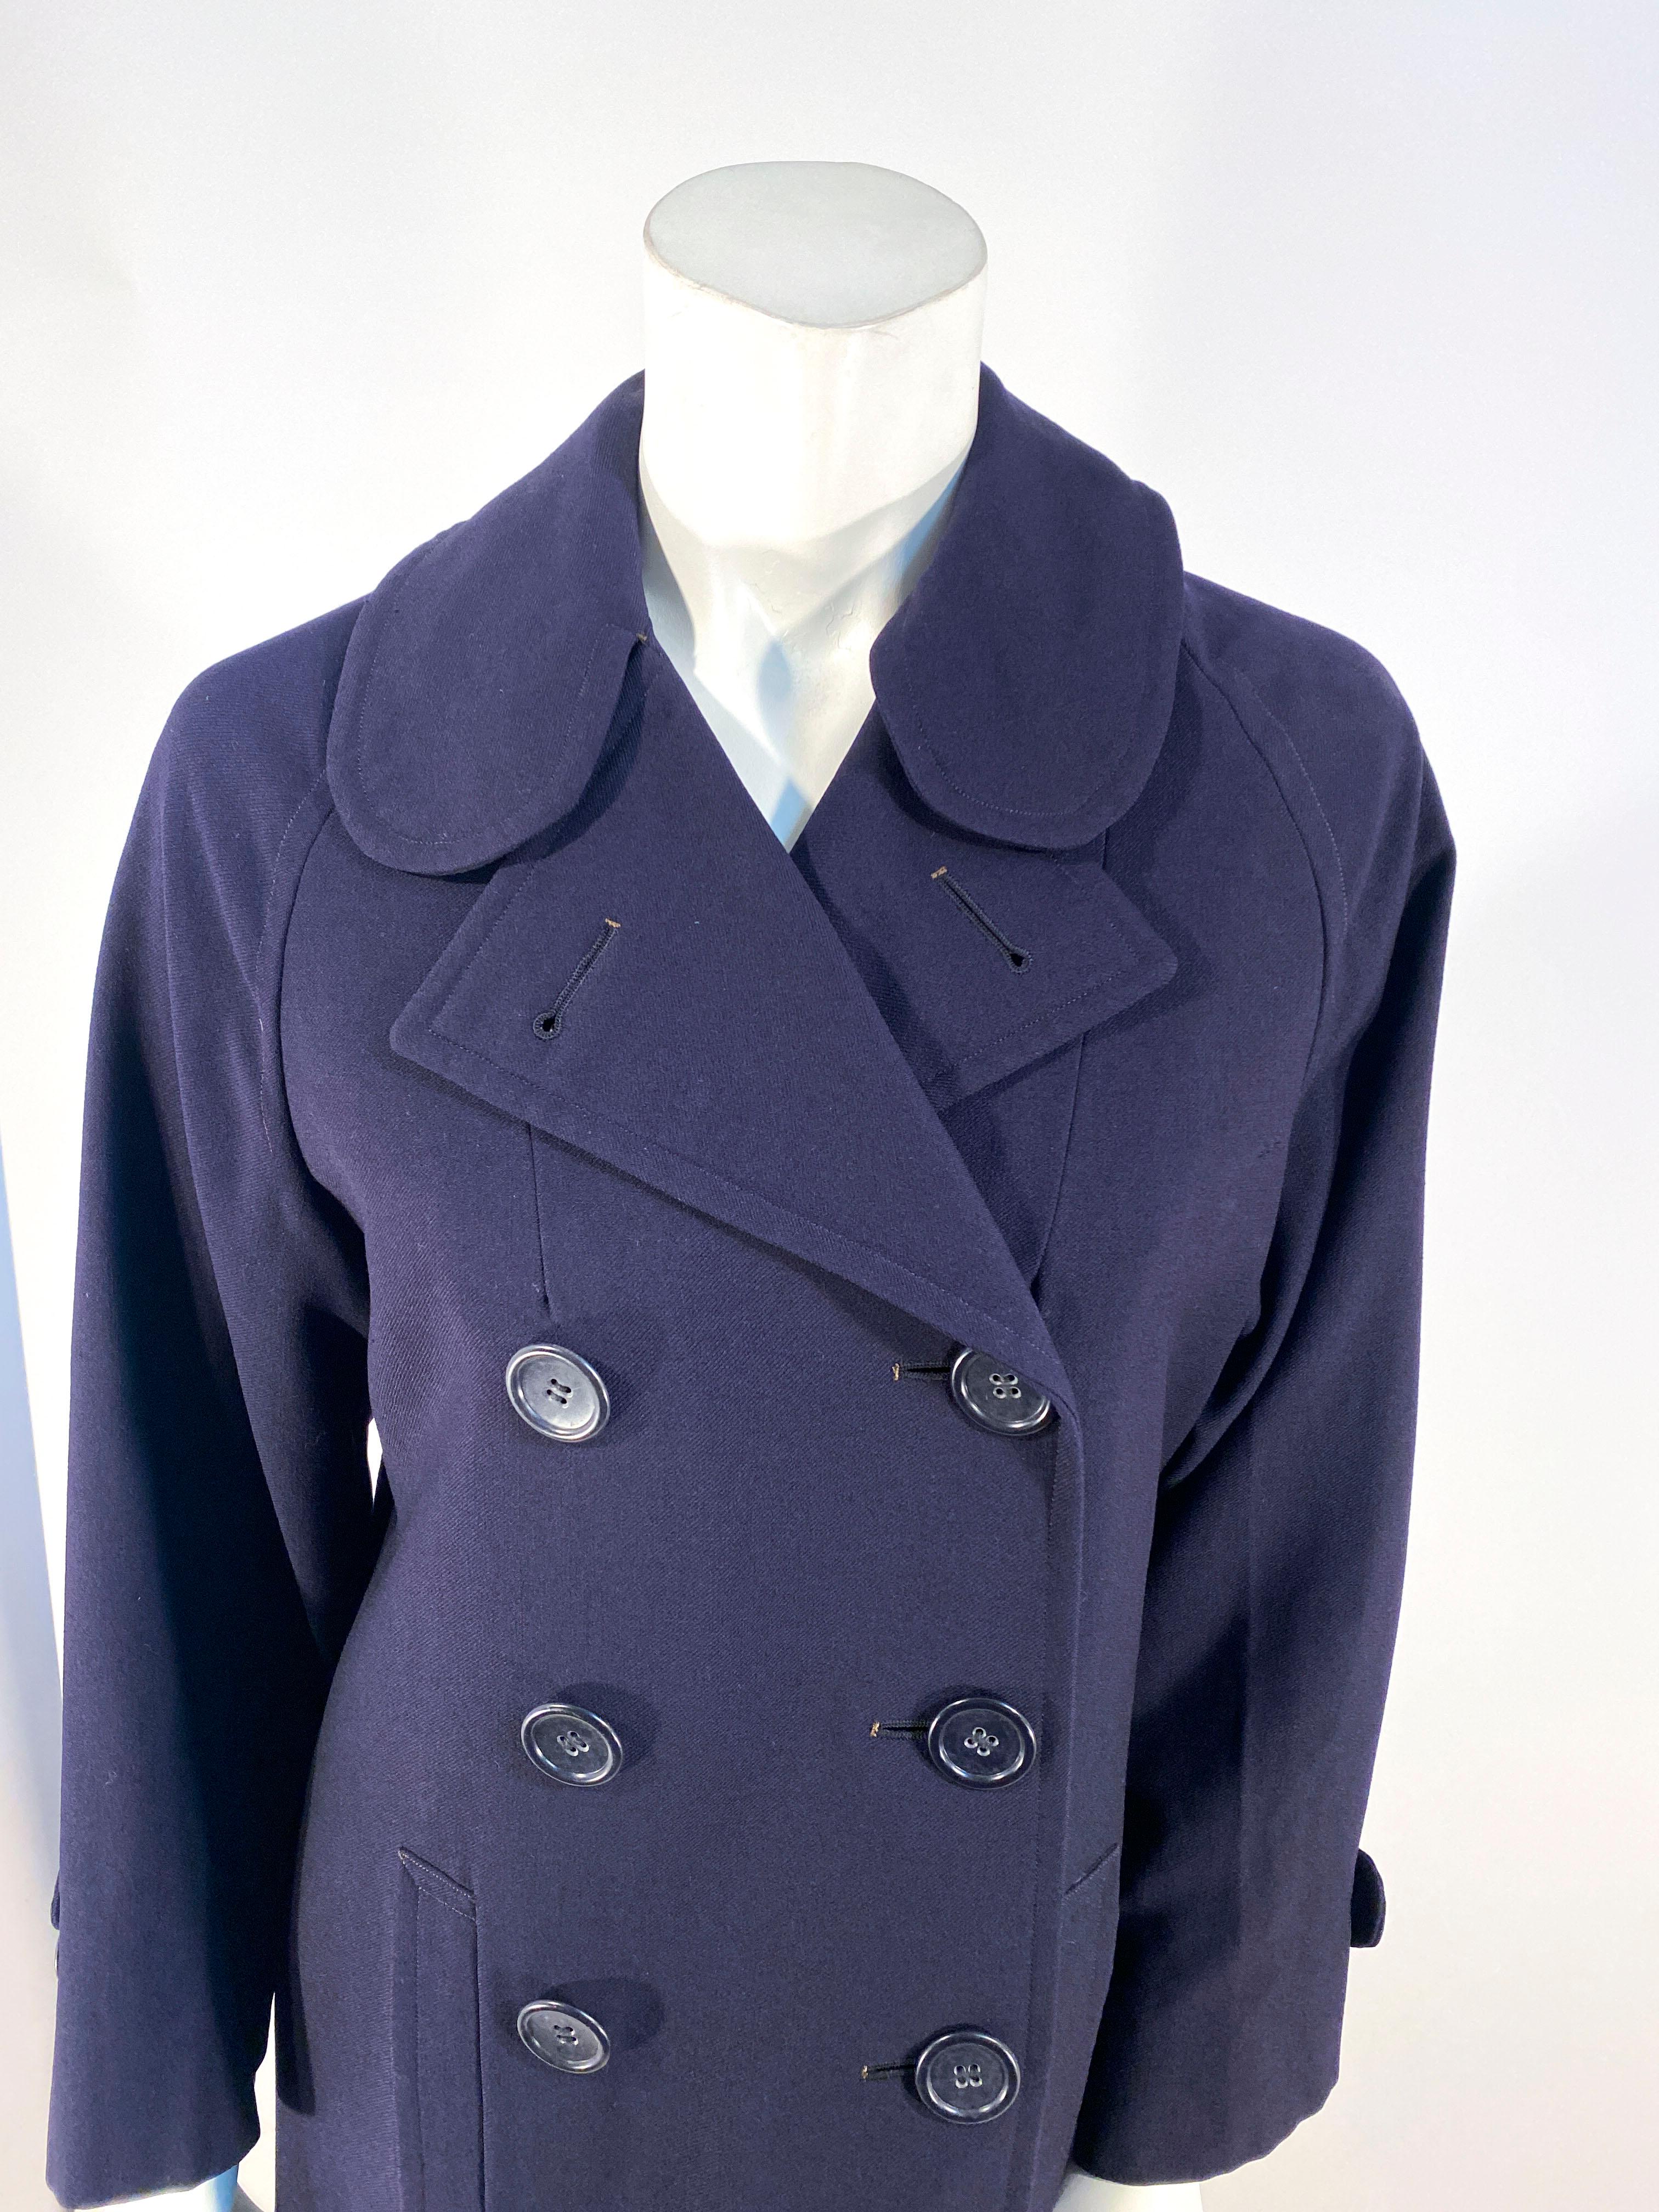 Zweireihiger Damenmantel der US Navy aus den 1940er Jahren mit zwei Vordertaschen, verstellbaren Manschetten und teilweisem Innenfutter. Auf dem Innenetikett steht, dass es sich bei diesem Mantel um ein US Woman's Navy Reserve Garment handelt. 
